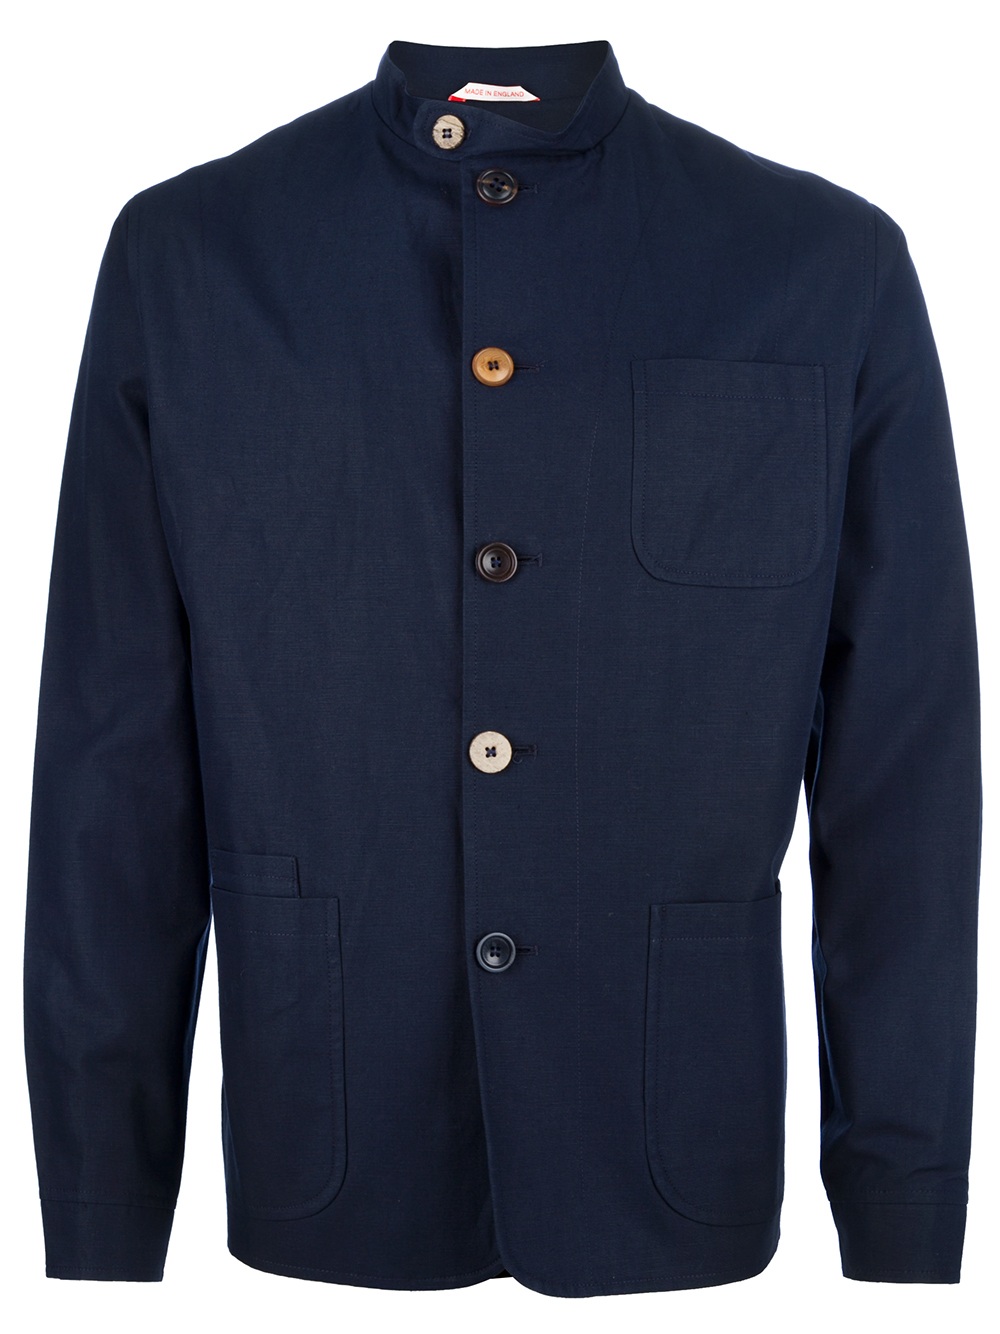 Oliver Spencer Coram Jacket in Navy (Blue) for Men - Lyst